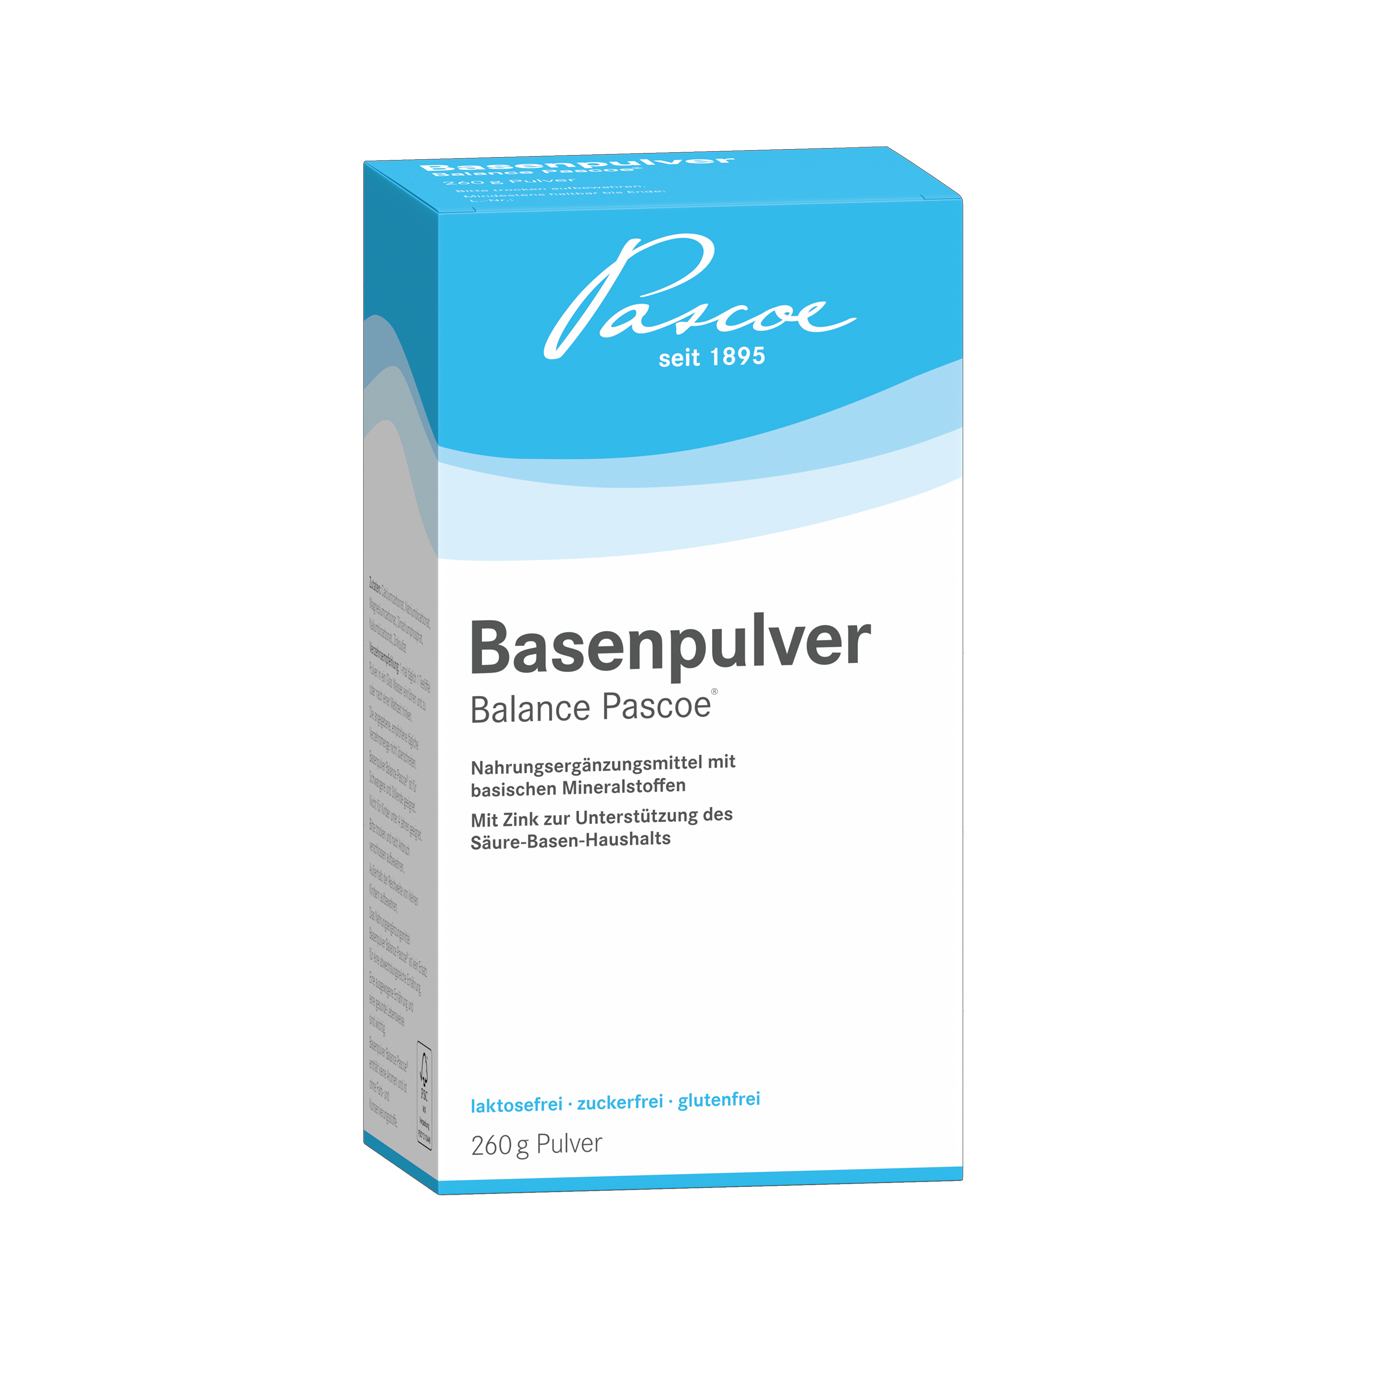 Basenpulver pH-balance Pascoe 260g Packshot PZN 00047415